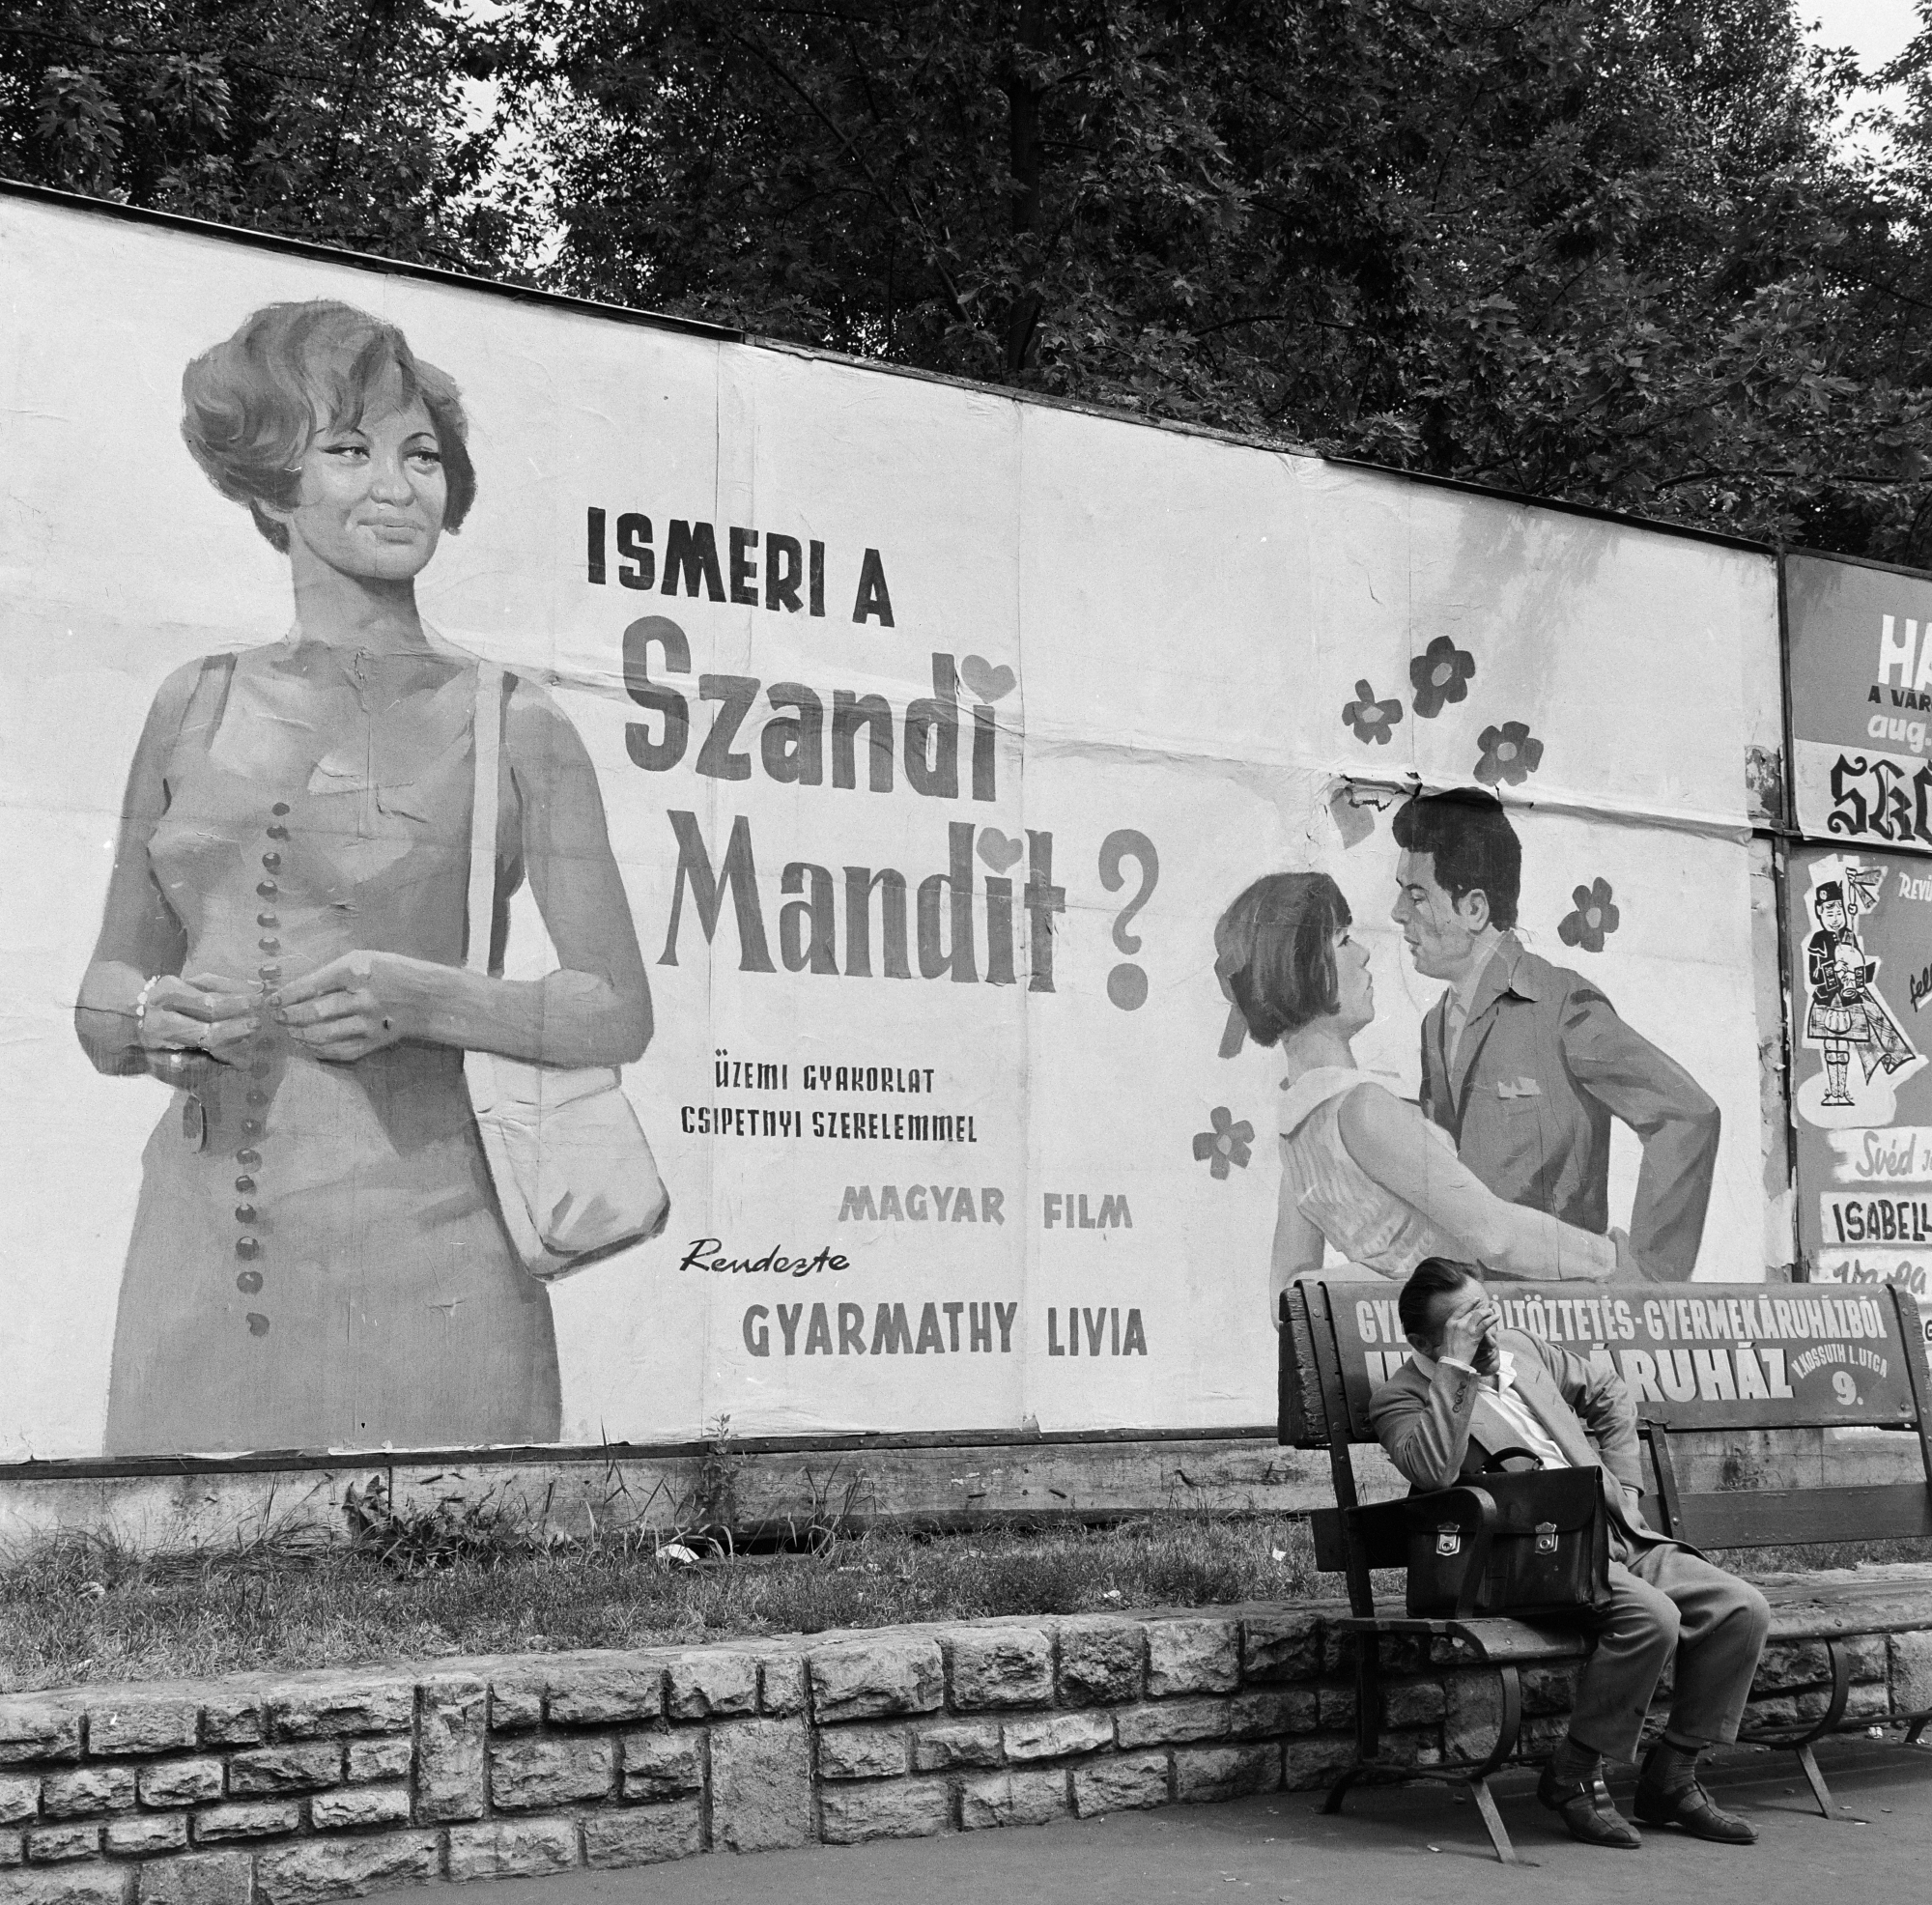 Ismeri a Szandi Mandit? filmplakát